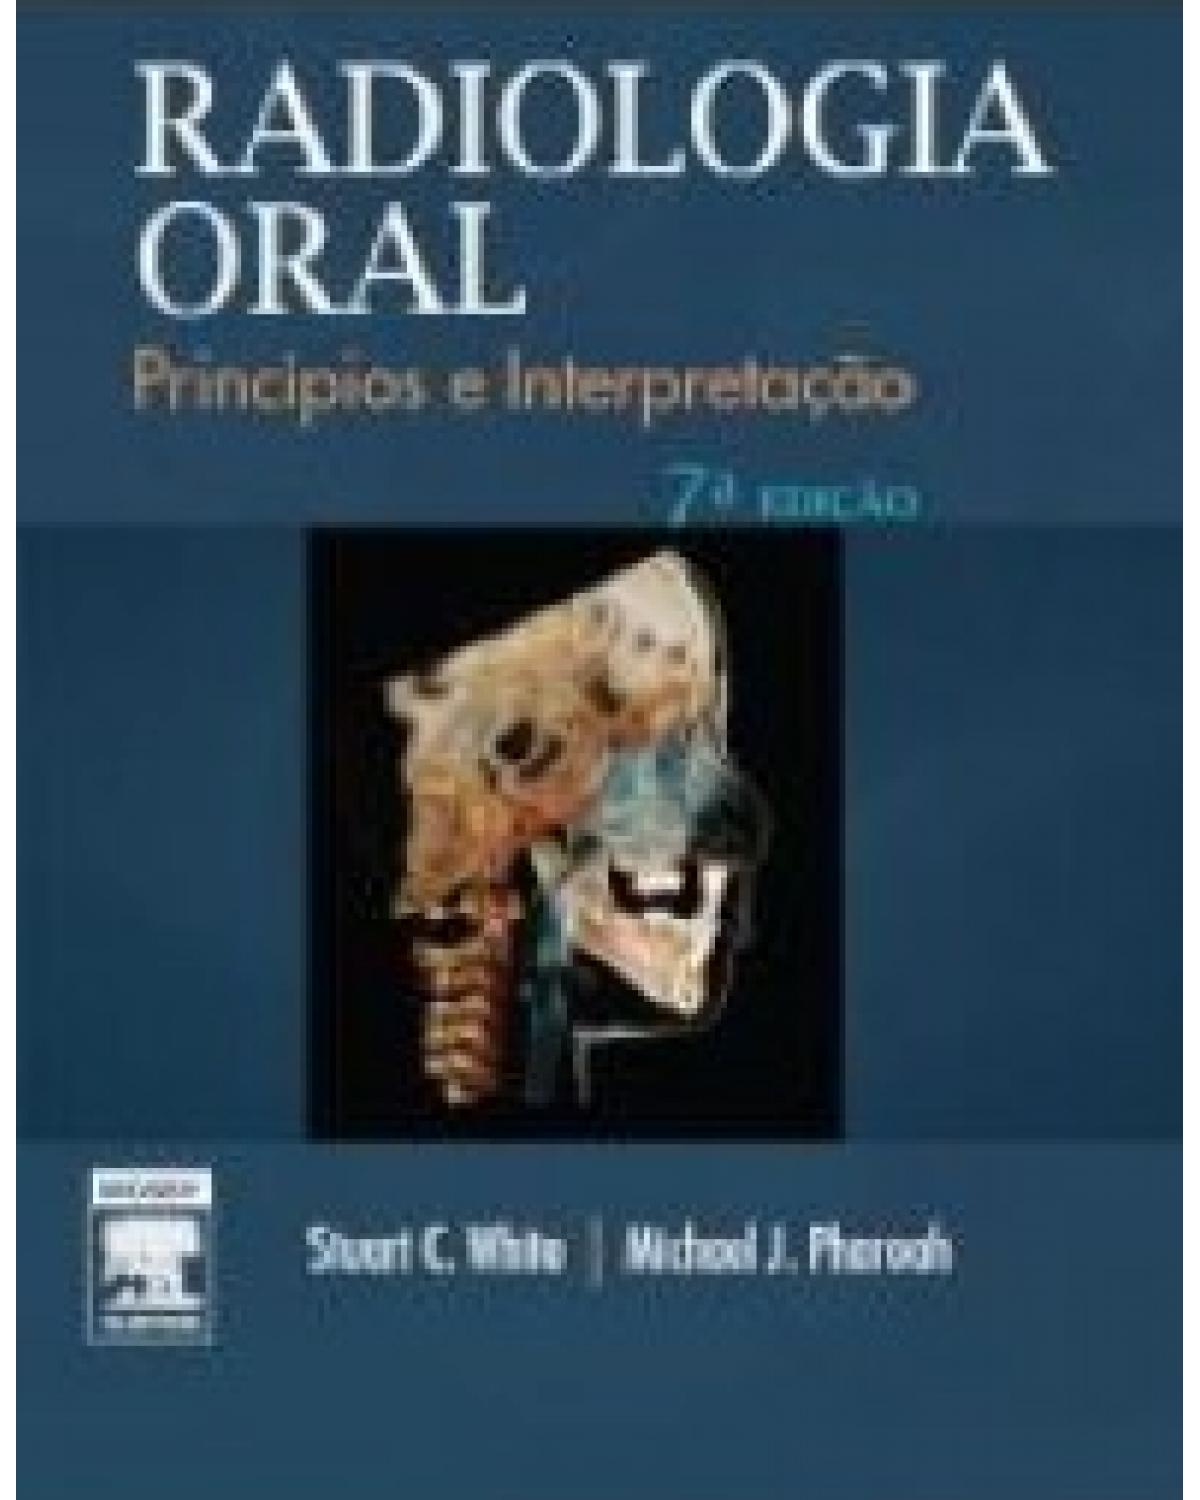 Radiologia oral - princípios e interpretação - 7ª Edição | 2015